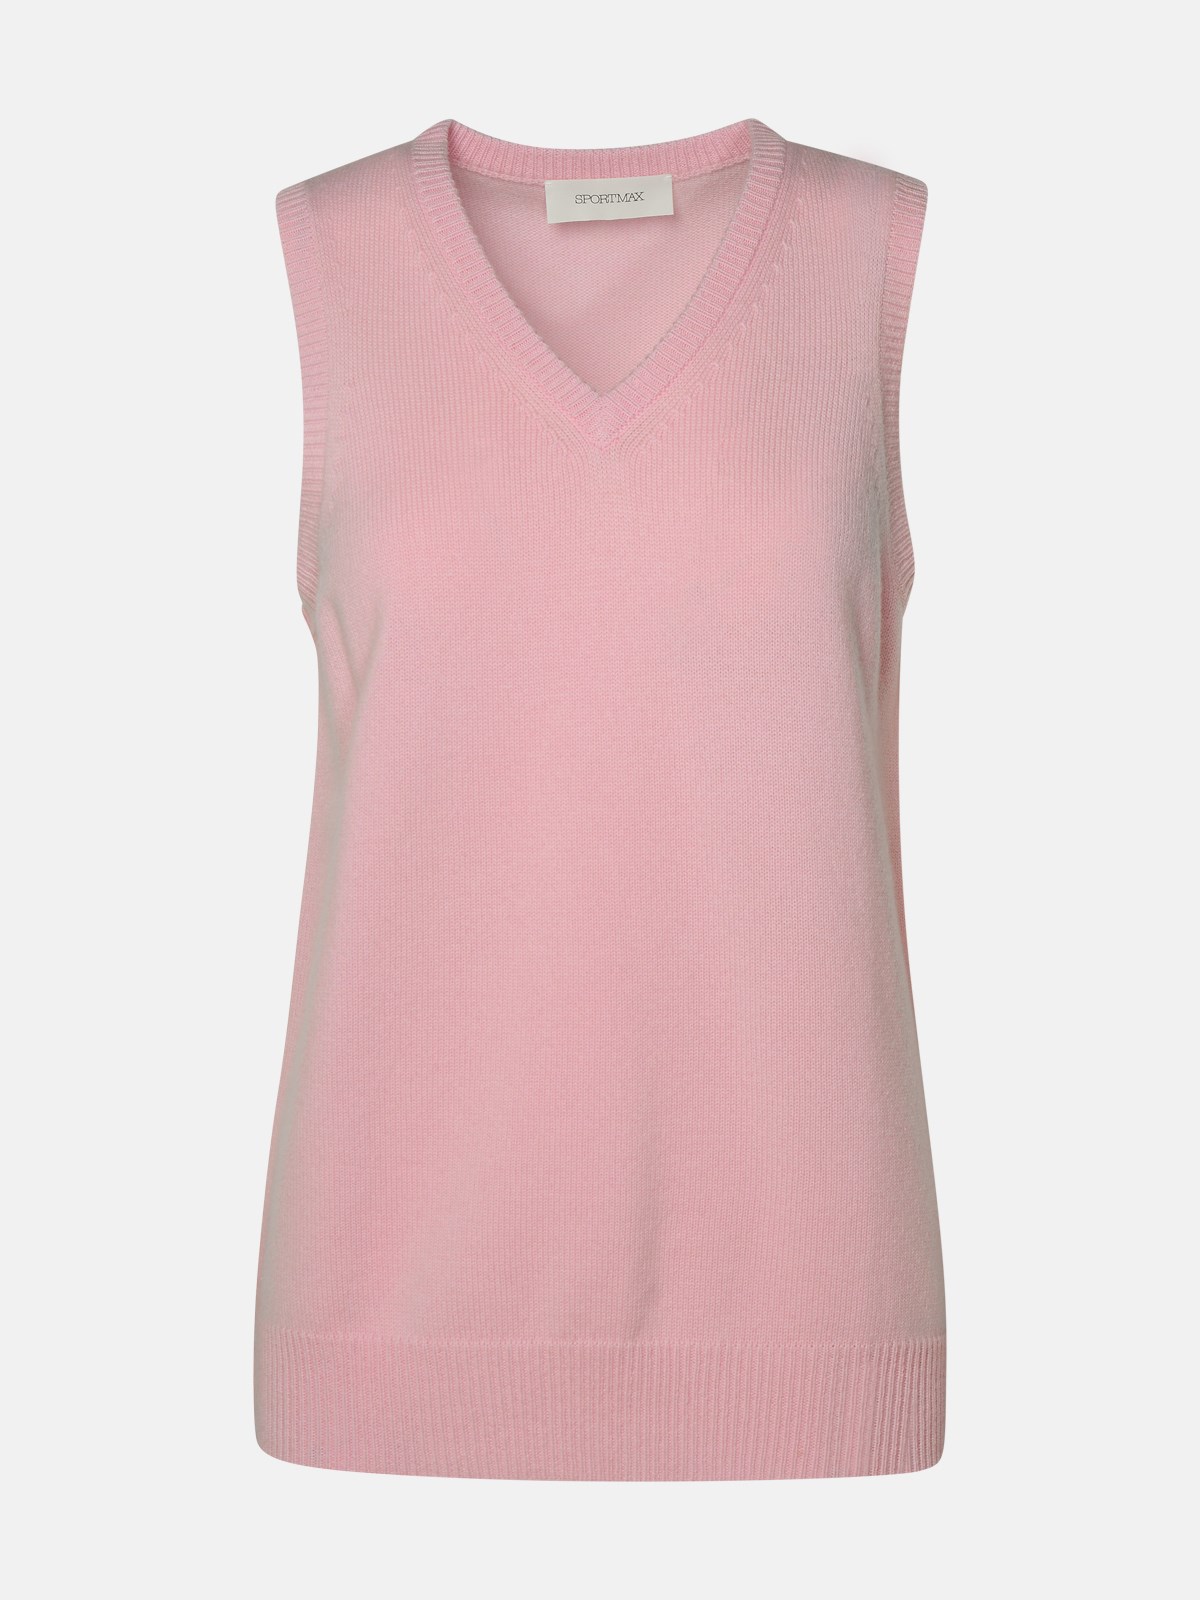 Sportmax Vest In Pink Cashmere Blend